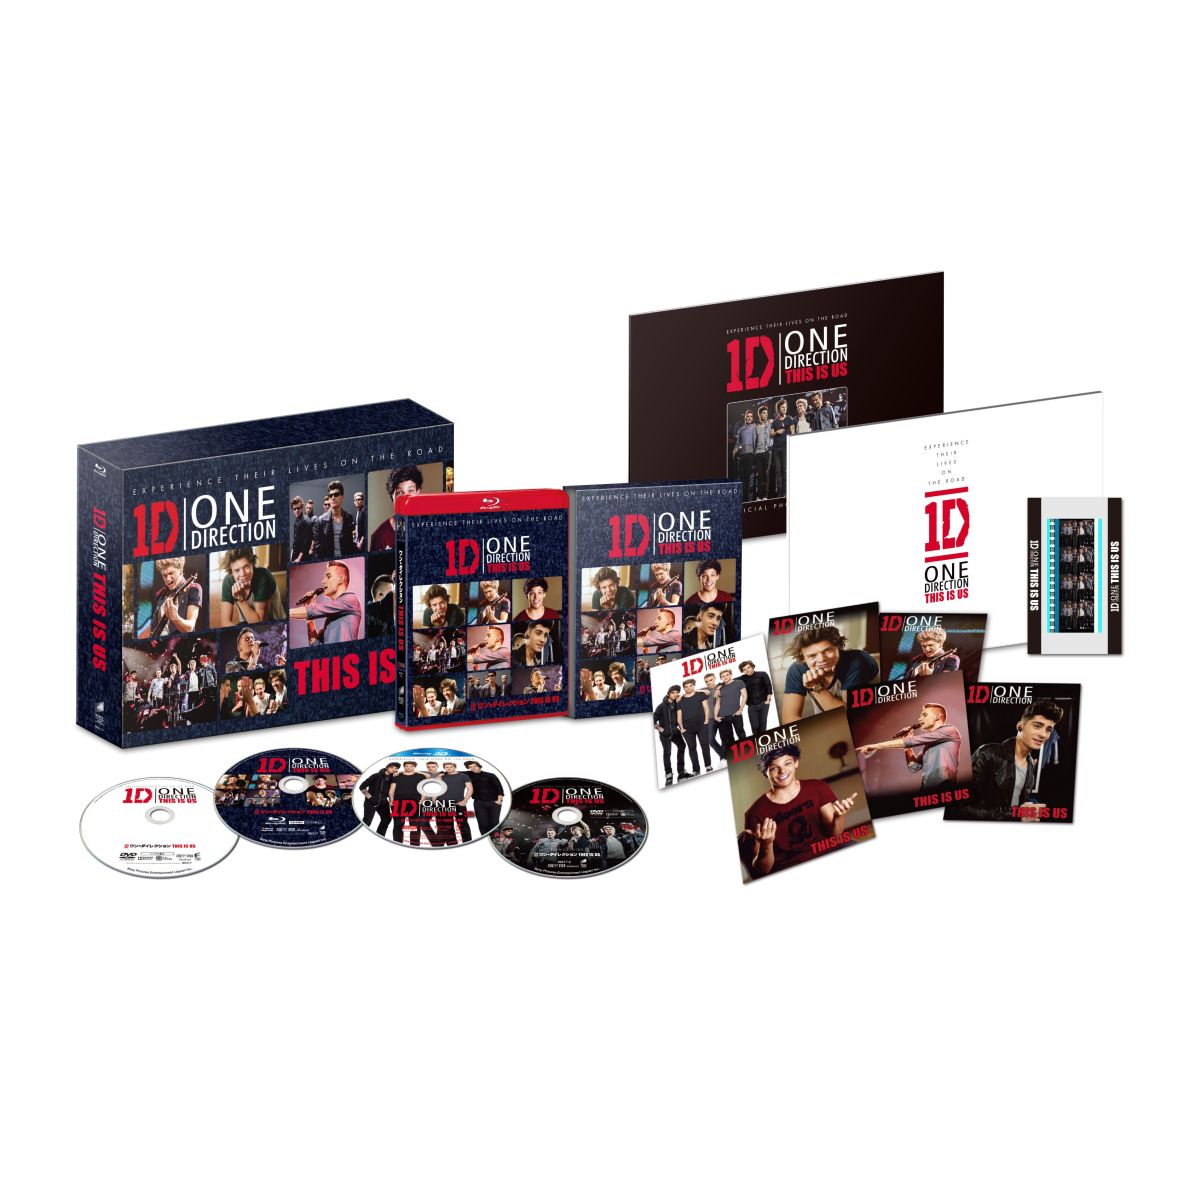 海外最新 Blu Ray ワン ダイレクション This Is Us This Is The Box デラックスboxセット Blu Ray Disc ワン ダイレクション Bpbh 737 ワン ダイレクシヨン 送料無料 ランキング1位獲得 R4urealtygroup Com